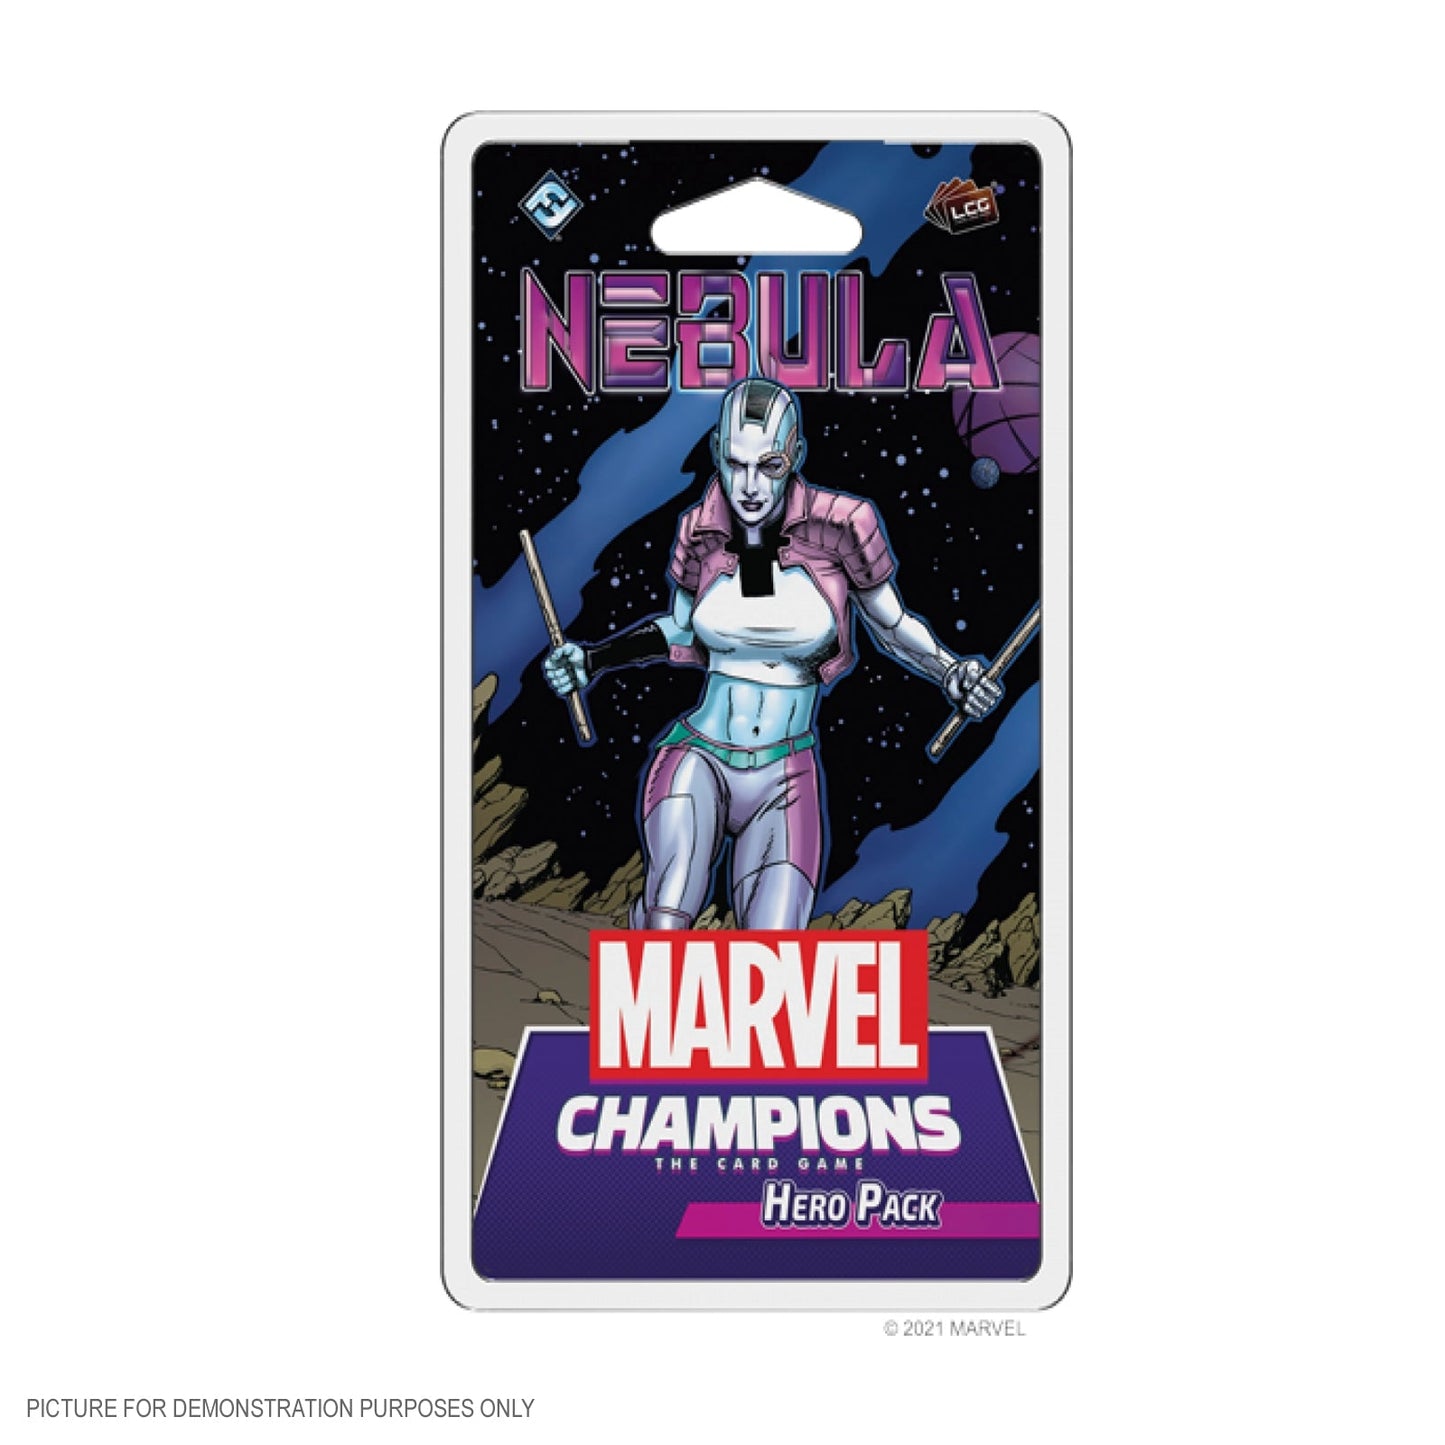 Marvel Champions LCG Nebula Hero Pack